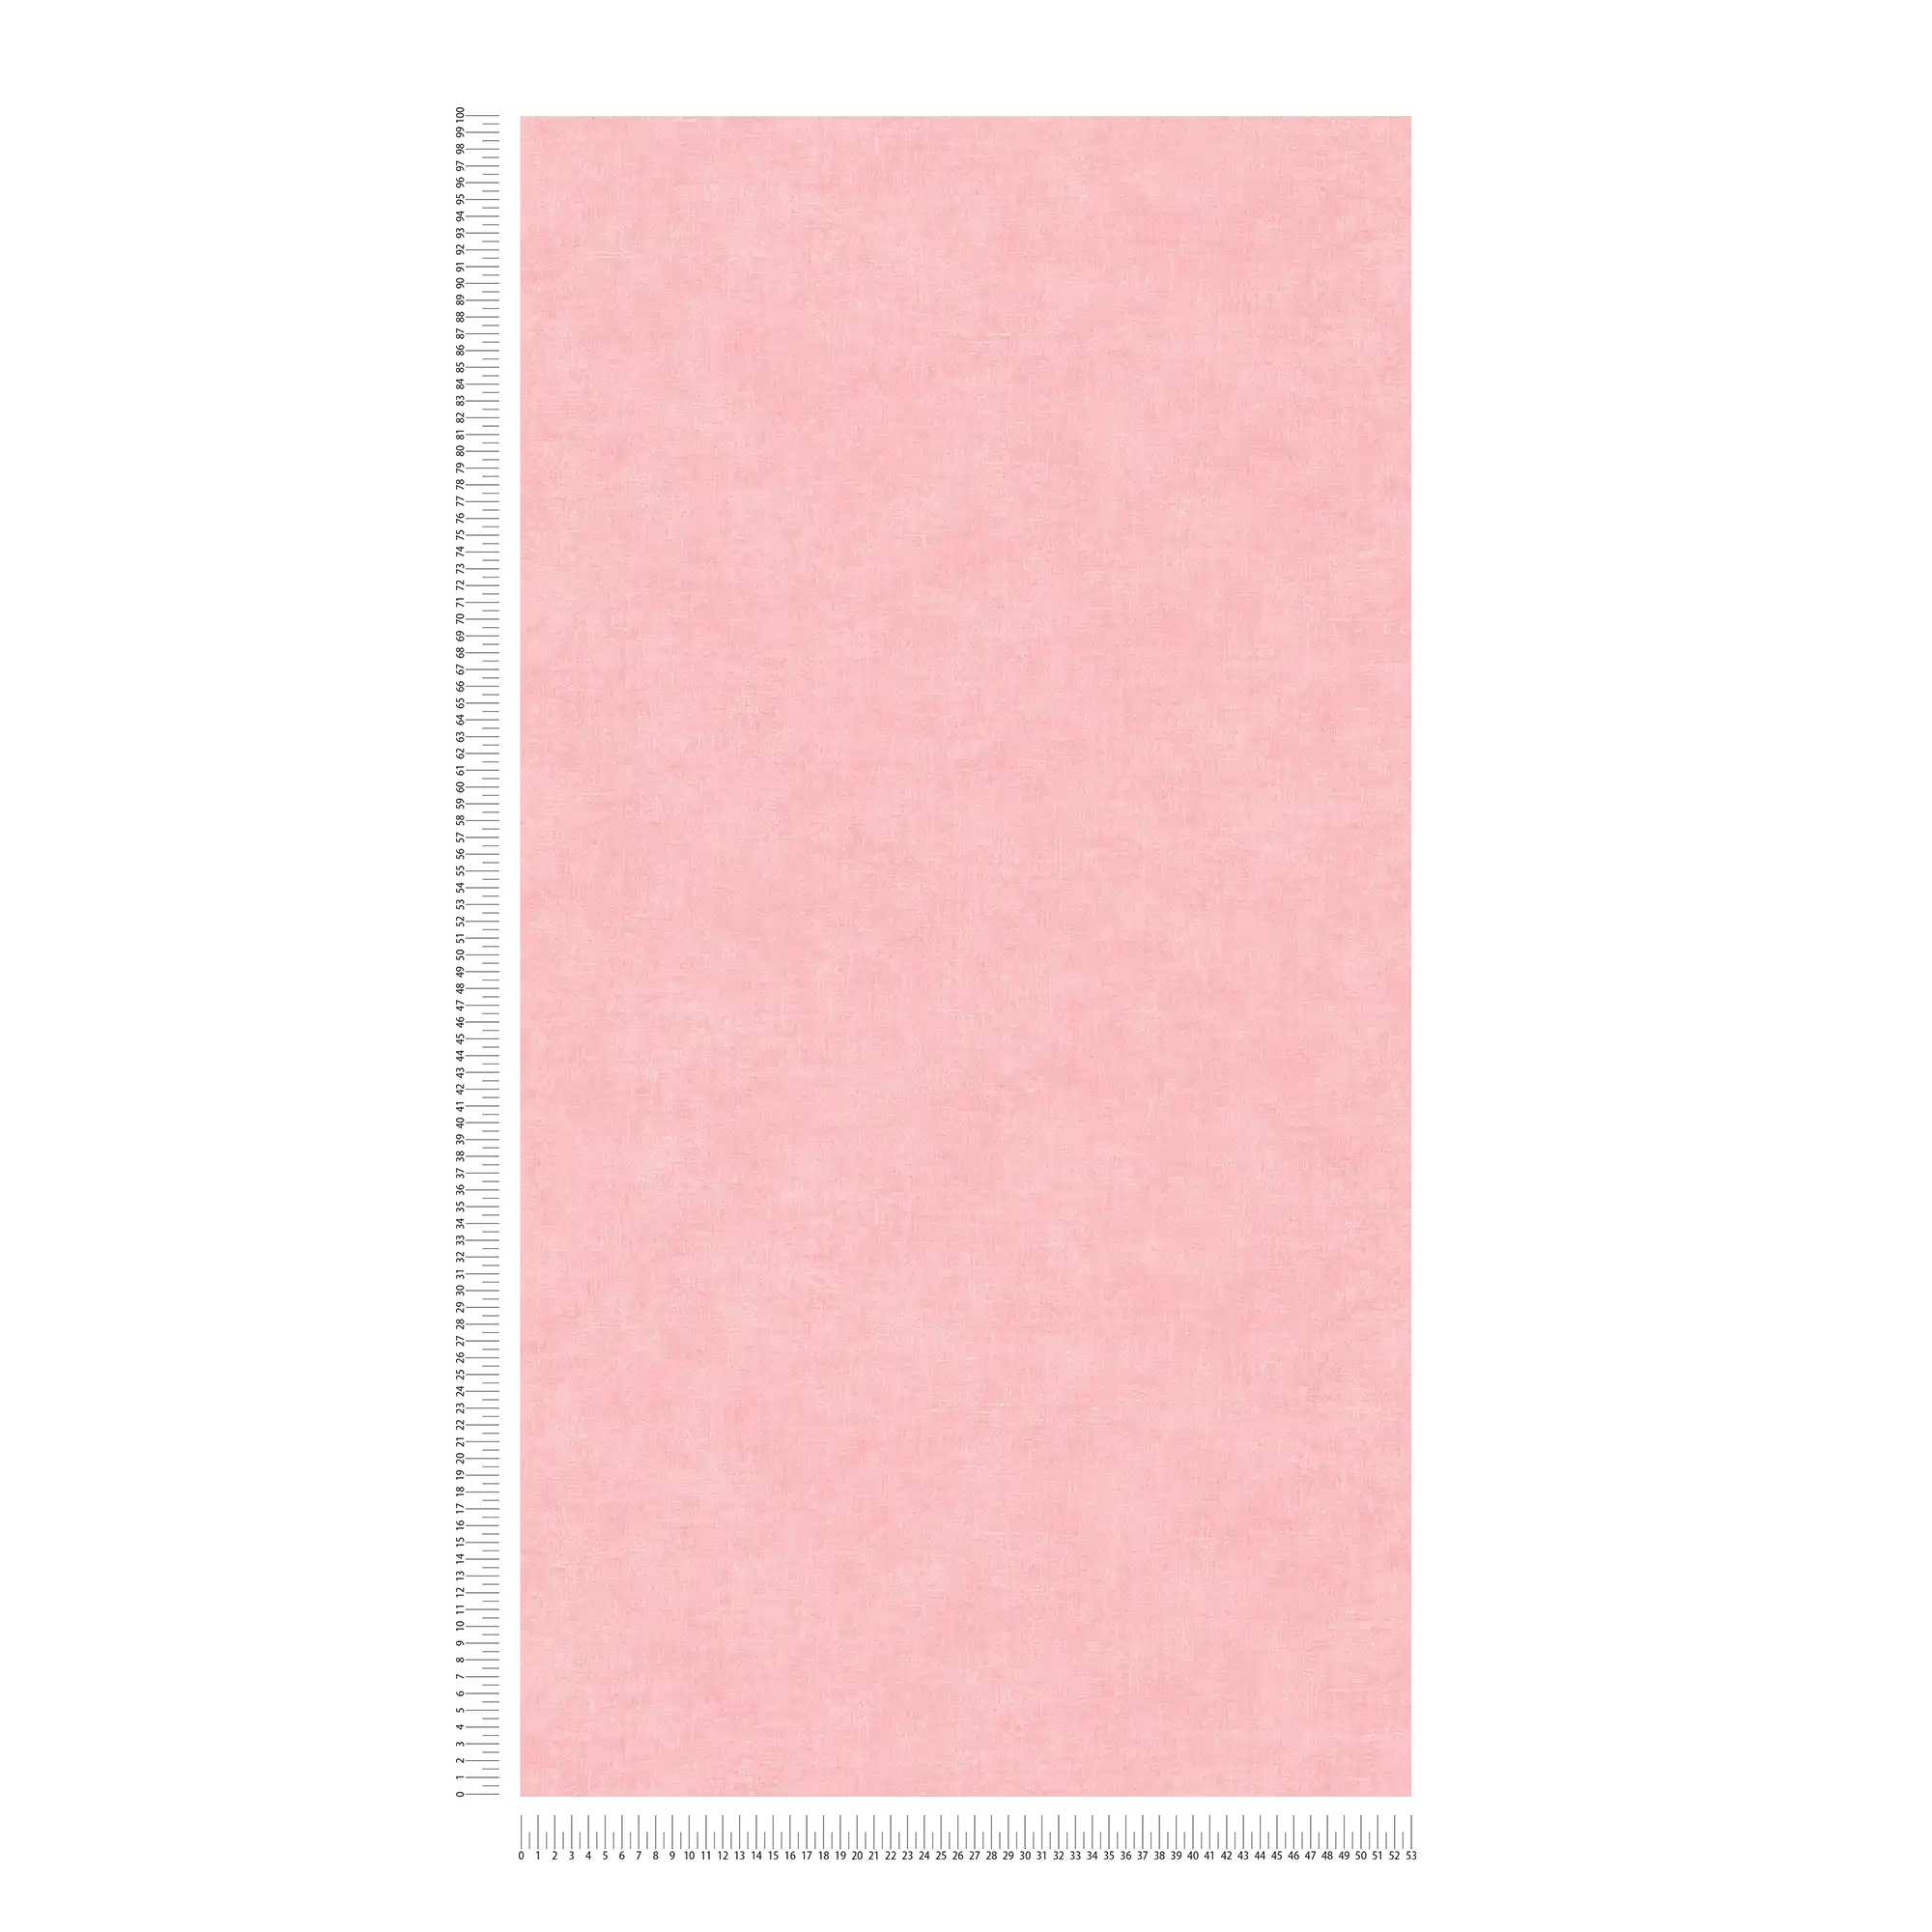             Papier peint rose uni & mat avec motifs structurés
        